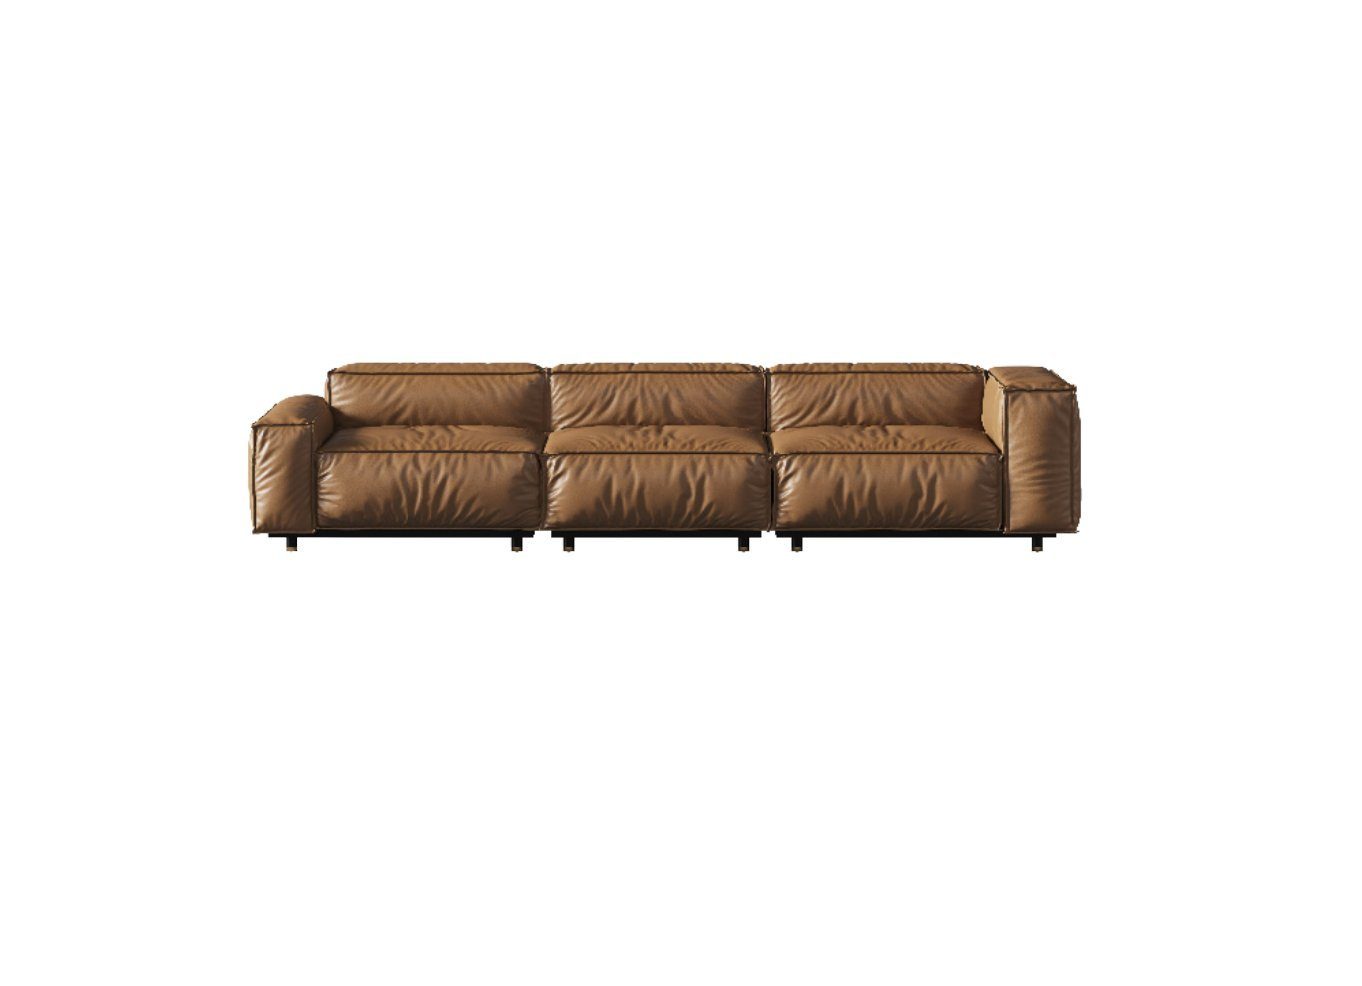 JVmoebel Sofa, Sofa 4 Sitzer Big xxl Couch Sofas Couchen Wohnzimmer Design Viersitzer Braun